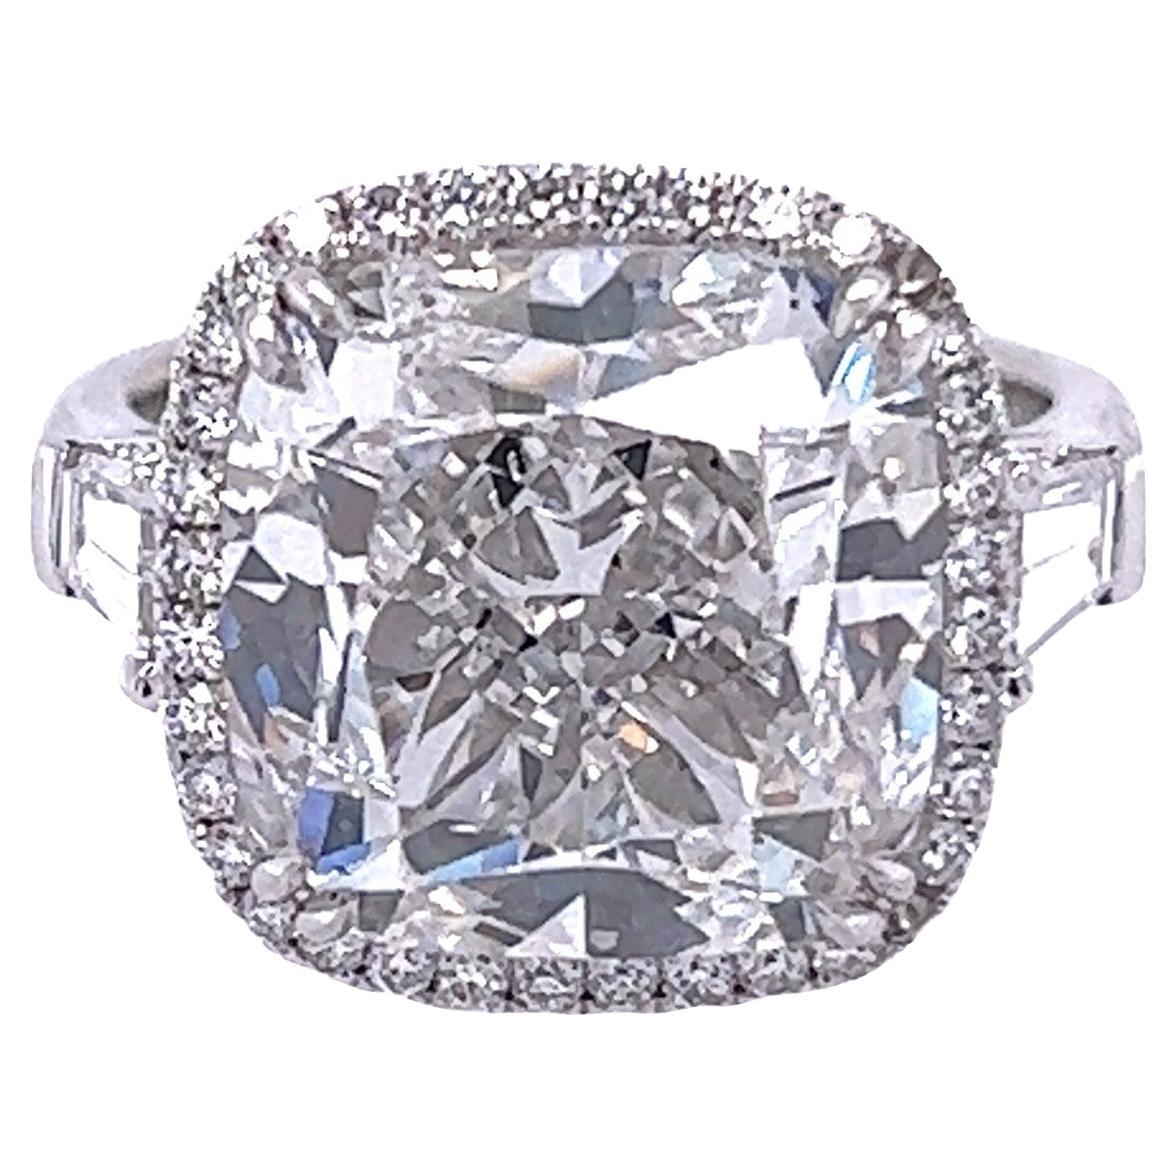 David Rosenberg 10.02 Carat Cushion Cut E VS2 GIA Diamond Engagement Ring